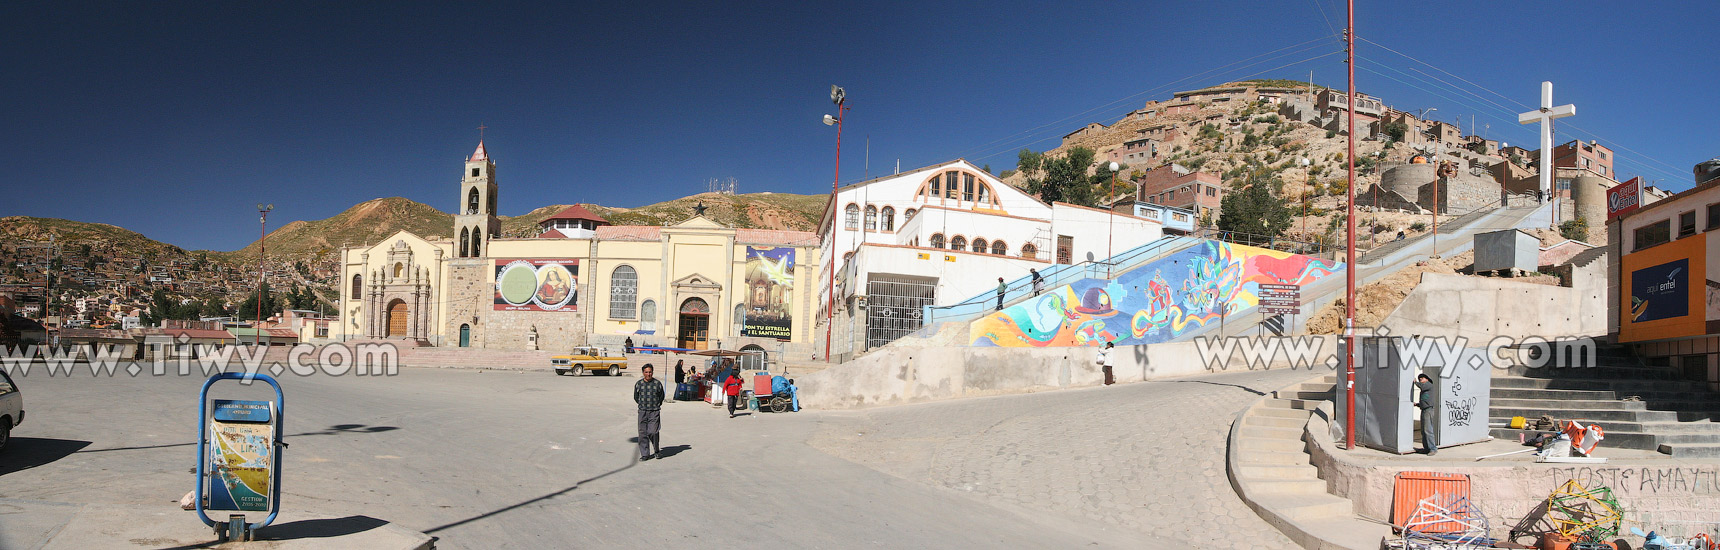 La Plaza del Folclore y el Santuario de la Virgen del Socavón